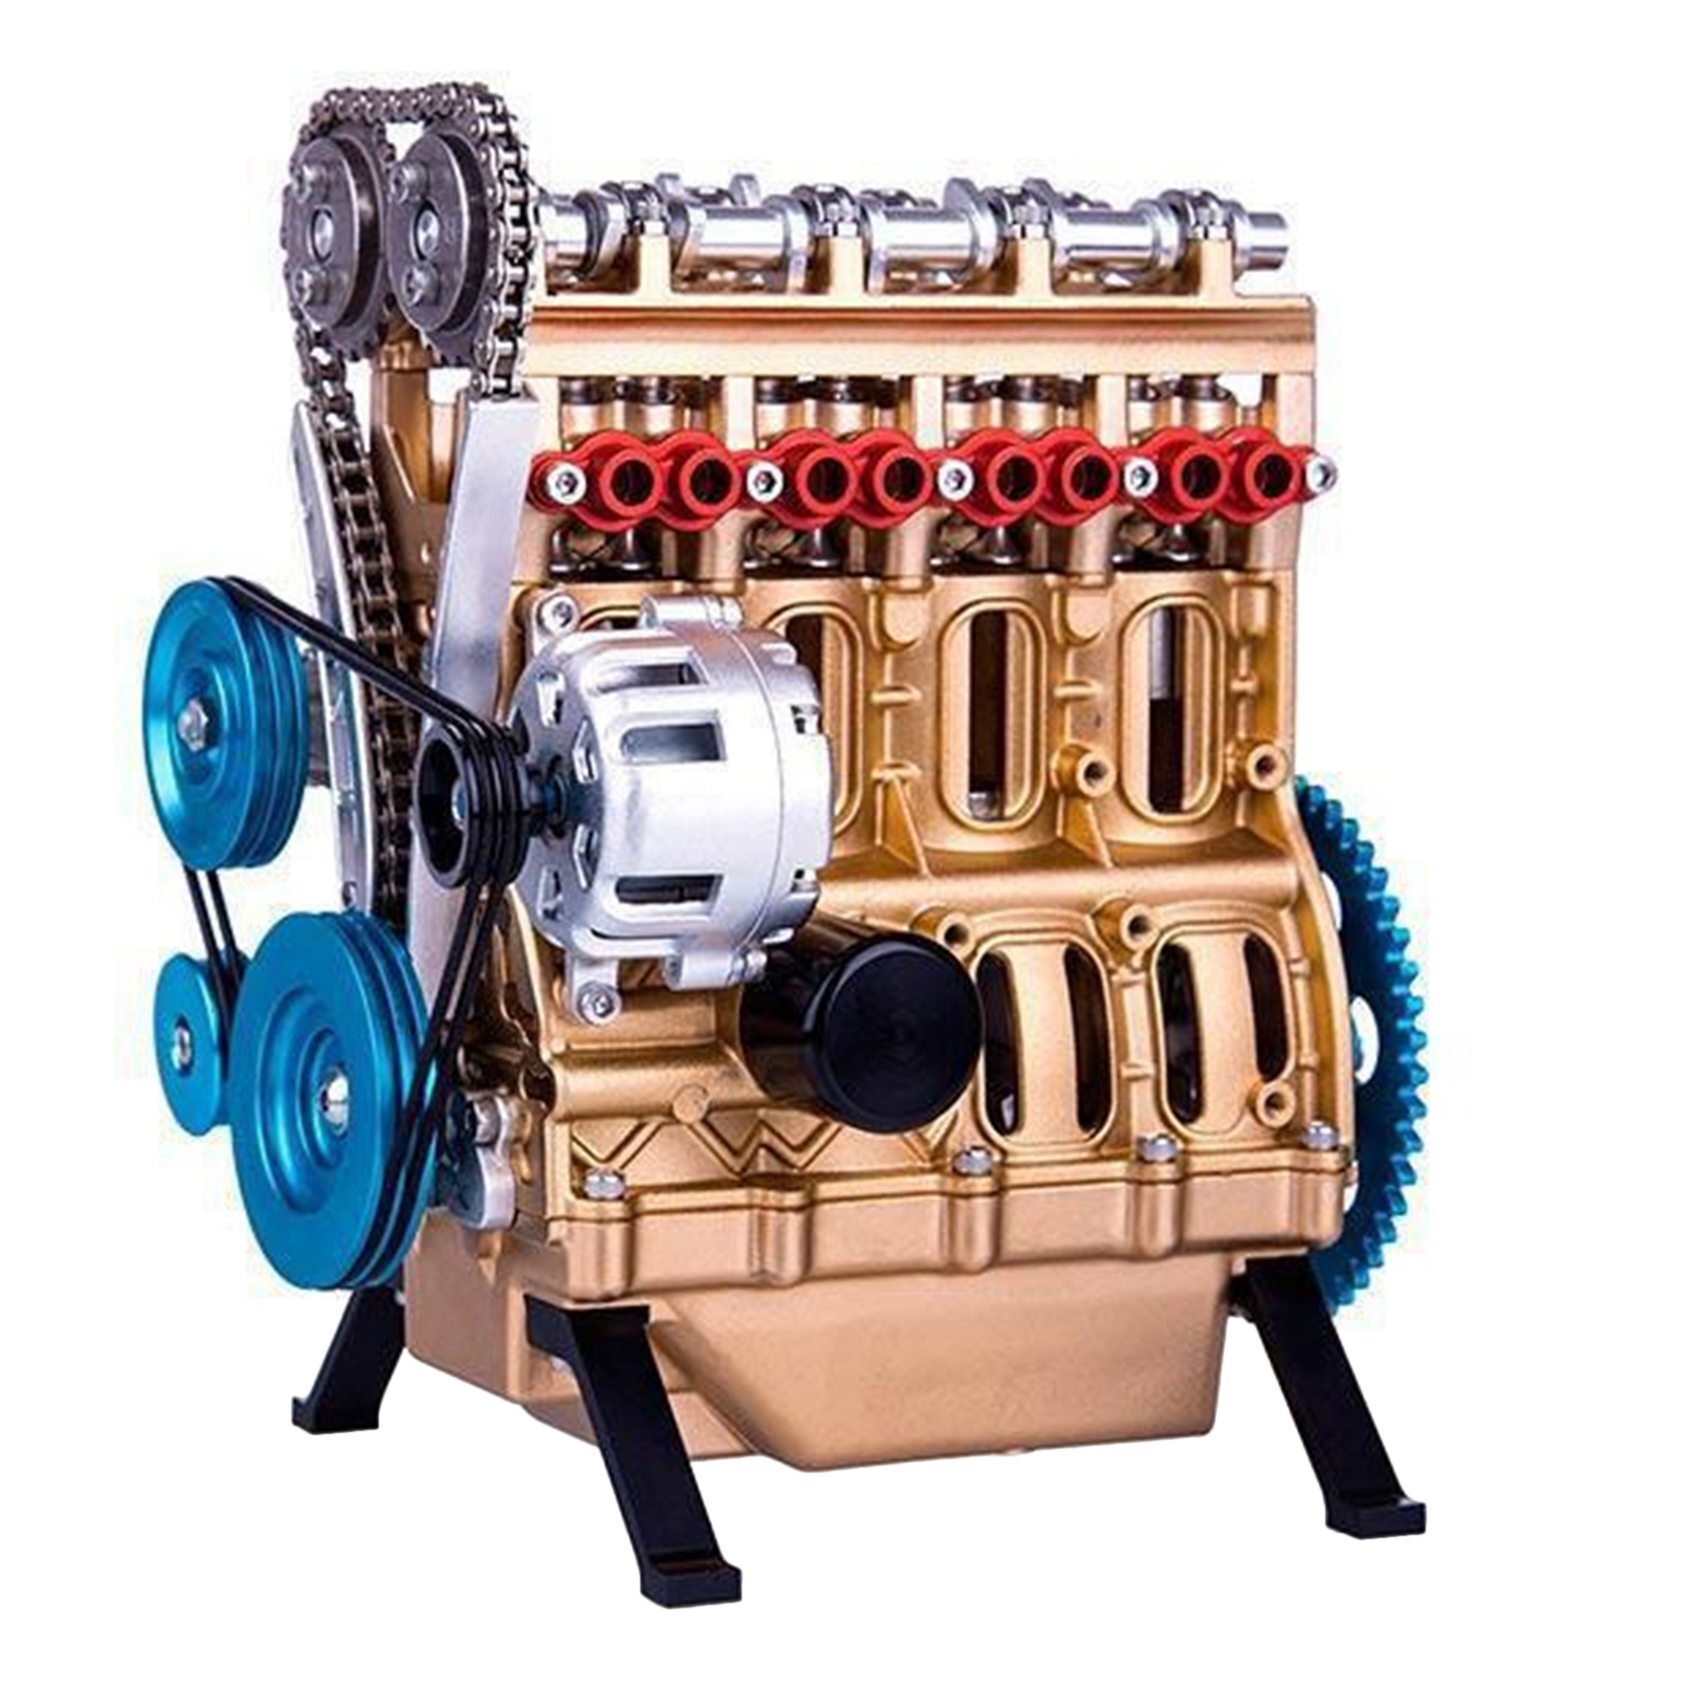 Какой двигатель в мини. Сборная модель двигателя v8. Рядный, 4-цилиндровый. Мини двигатель v8 Teching dm118. Макет двигателя.